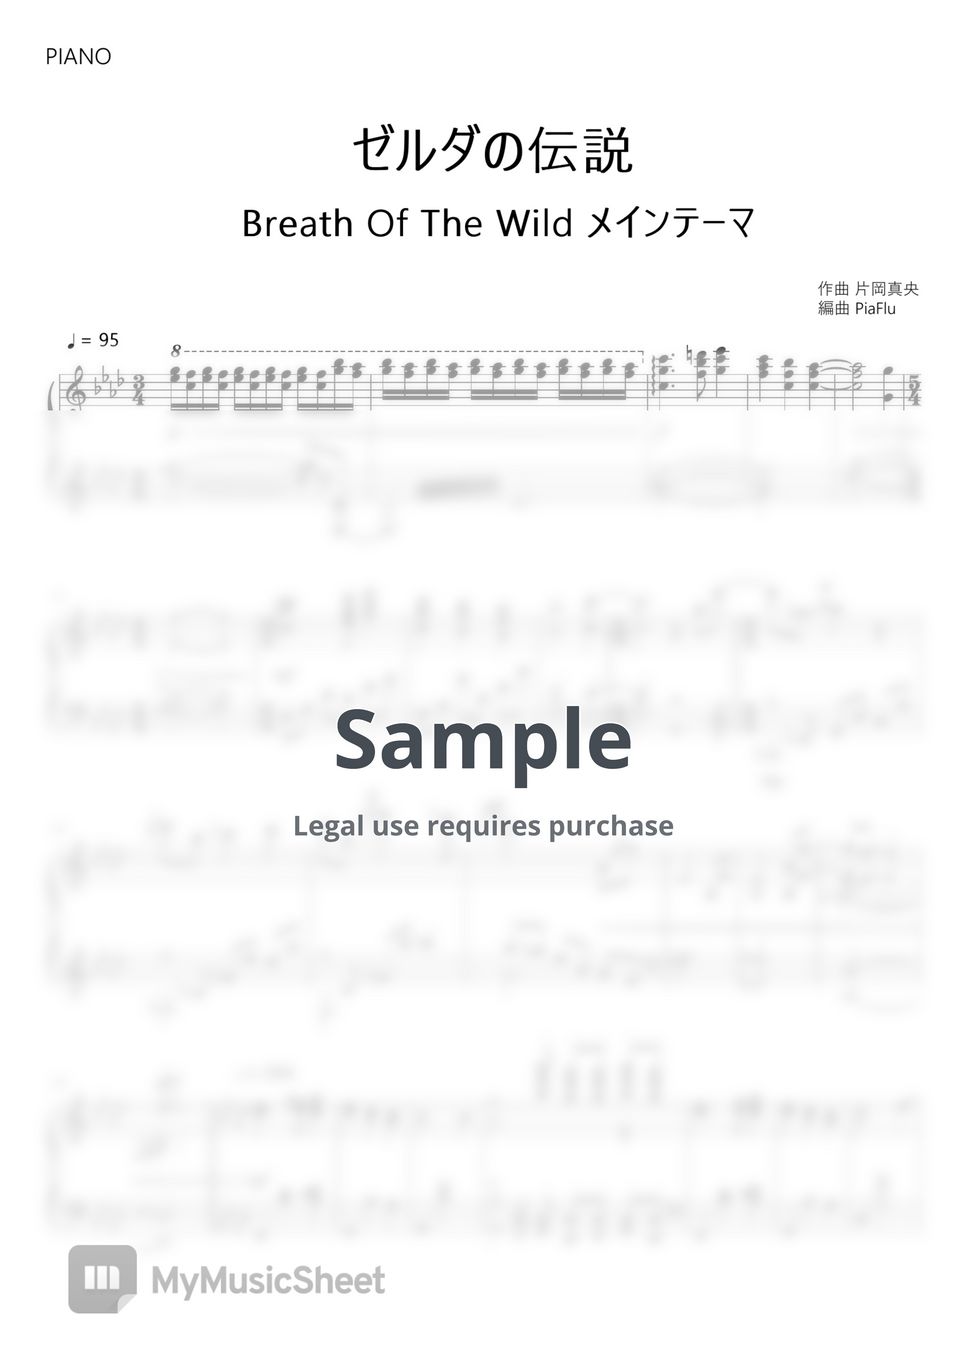 片岡真央 - Manaka Kataoka - Main Theme - The Legend of Zelda BotW (Piano) by PiaFlu / ピアフル Piano&Flute